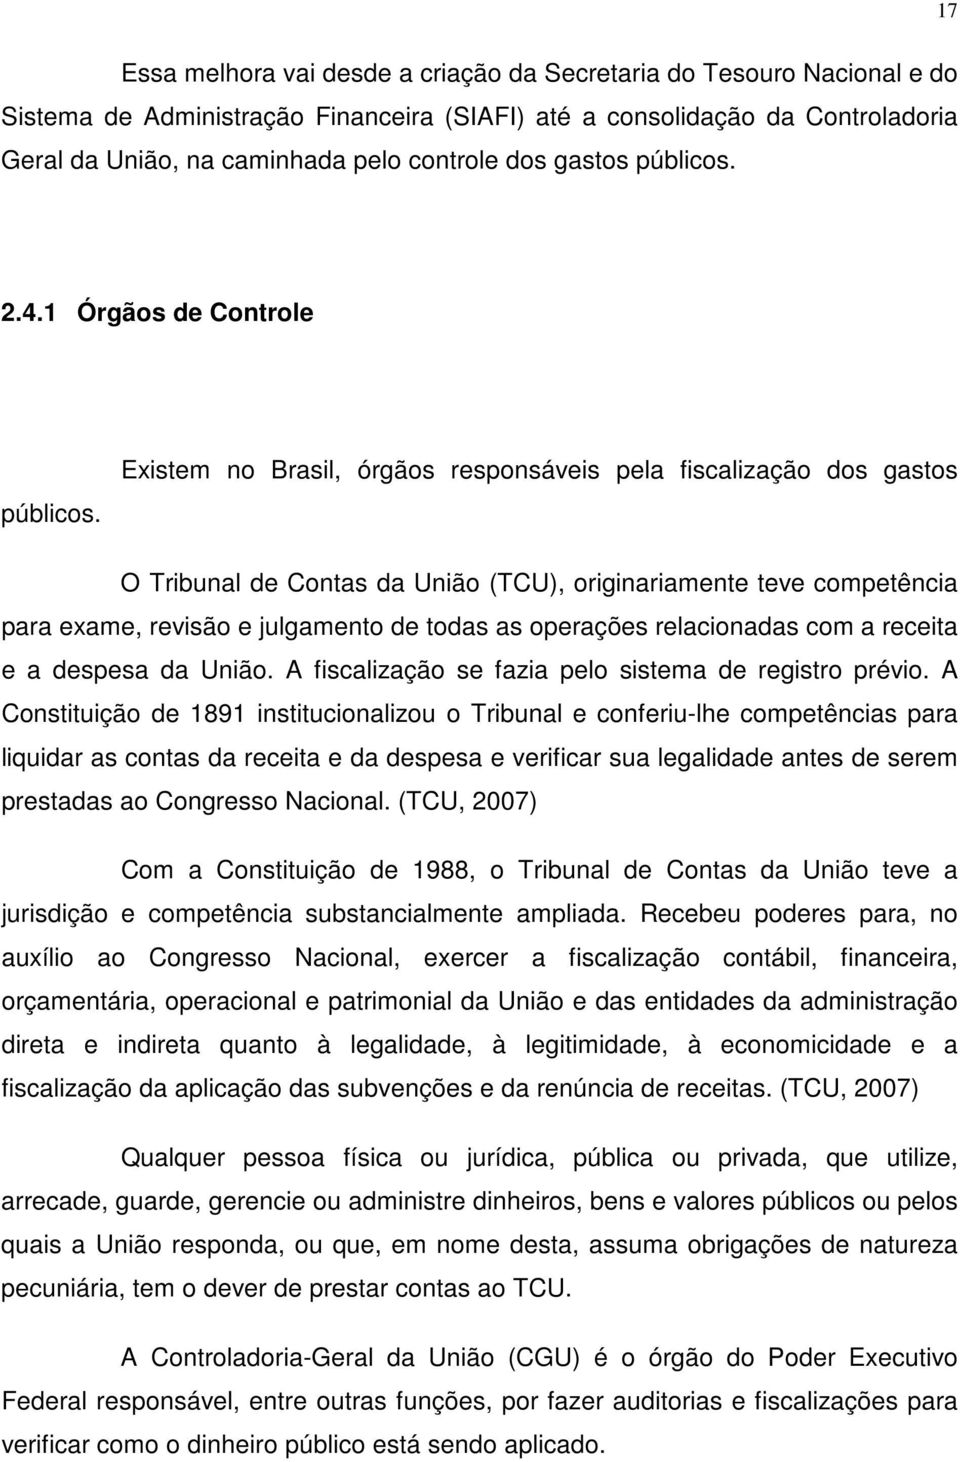 Existem no Brasil, órgãos responsáveis pela fiscalização dos gastos O Tribunal de Contas da União (TCU), originariamente teve competência para exame, revisão e julgamento de todas as operações